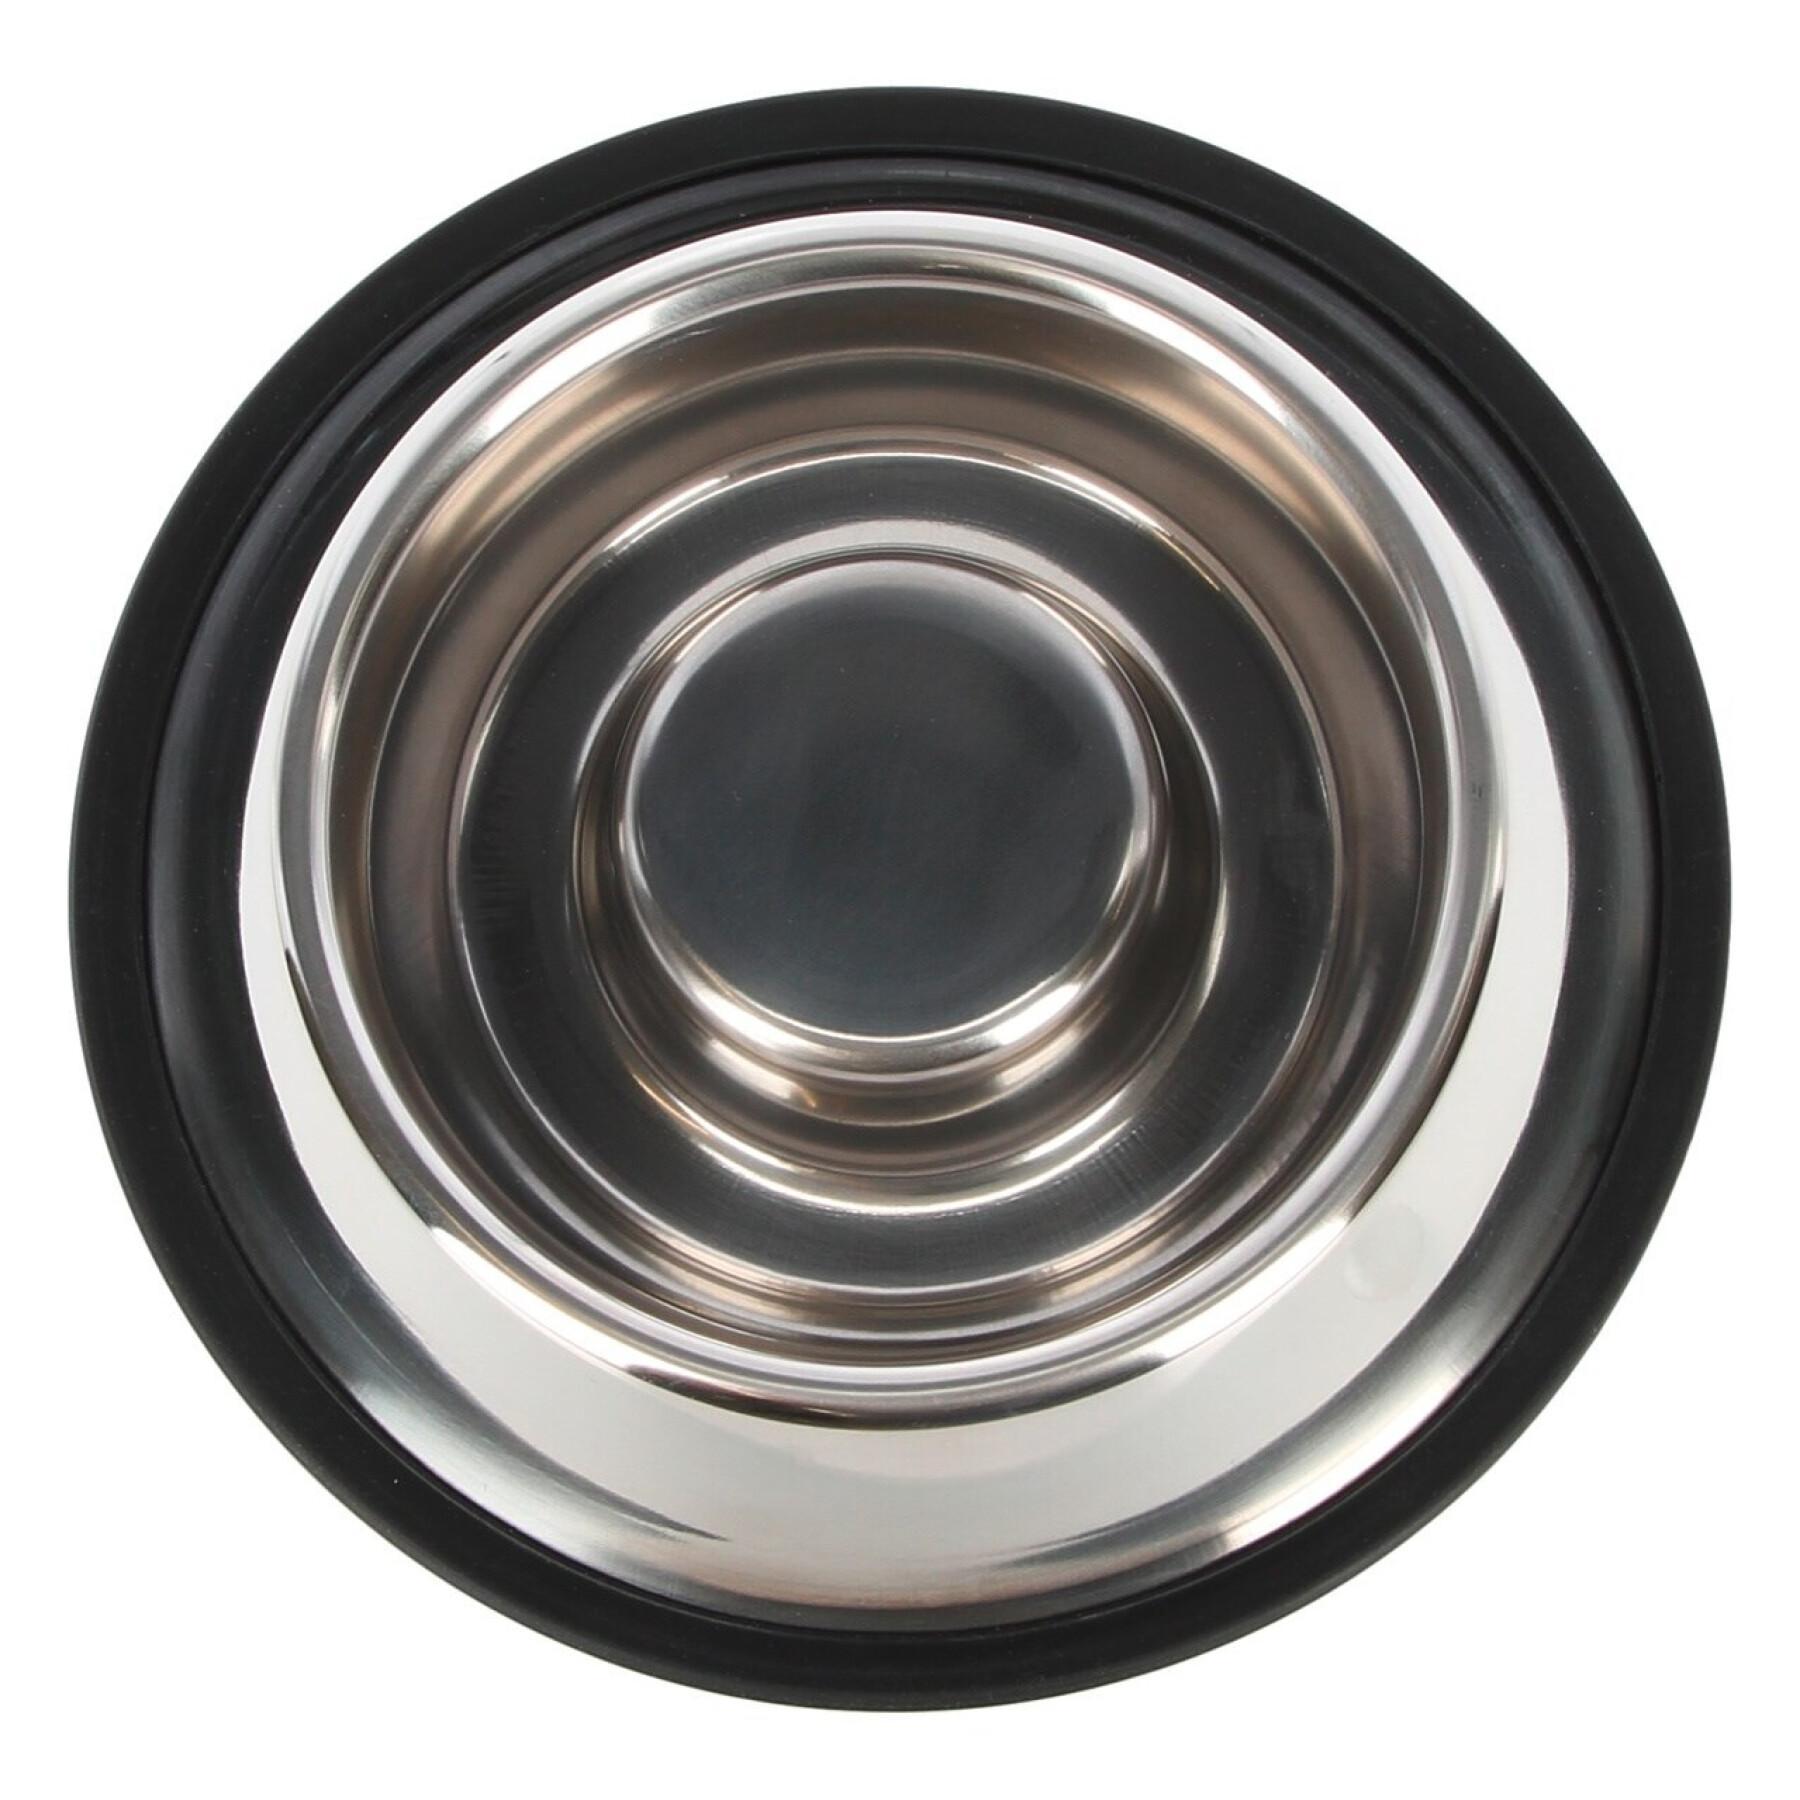 Stainless steel bowl Kerbl Anti Dribble